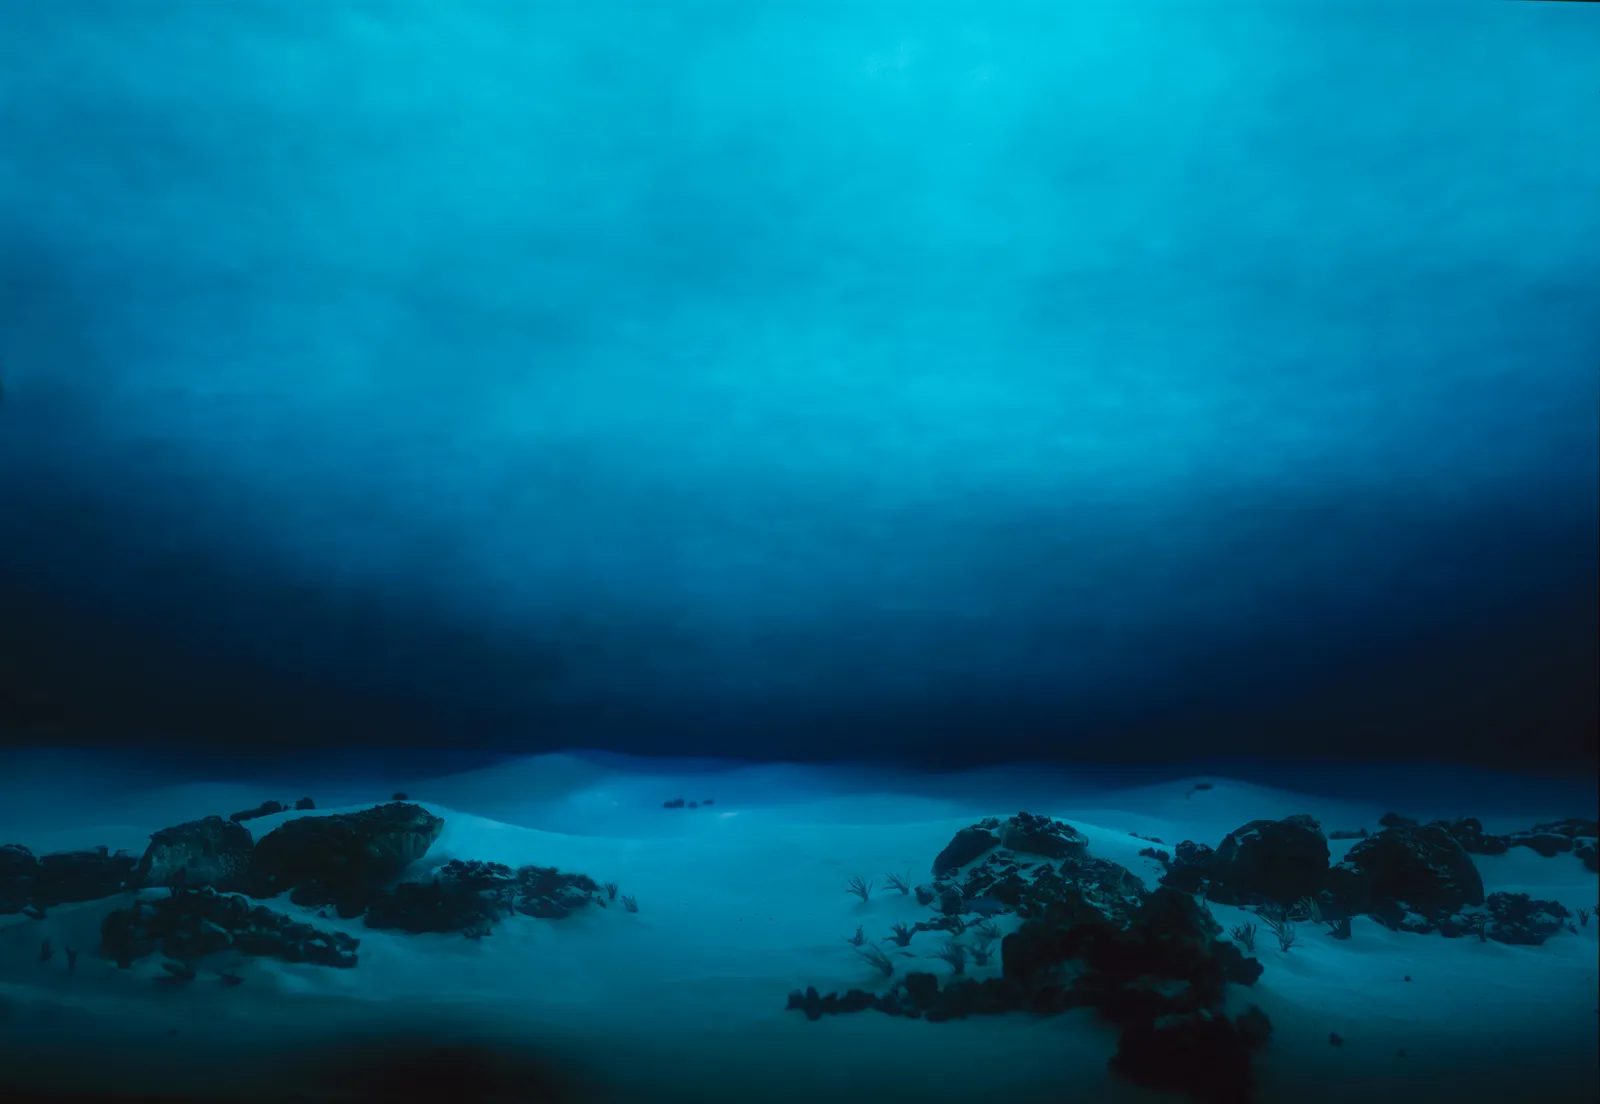 underwater ocean pictures